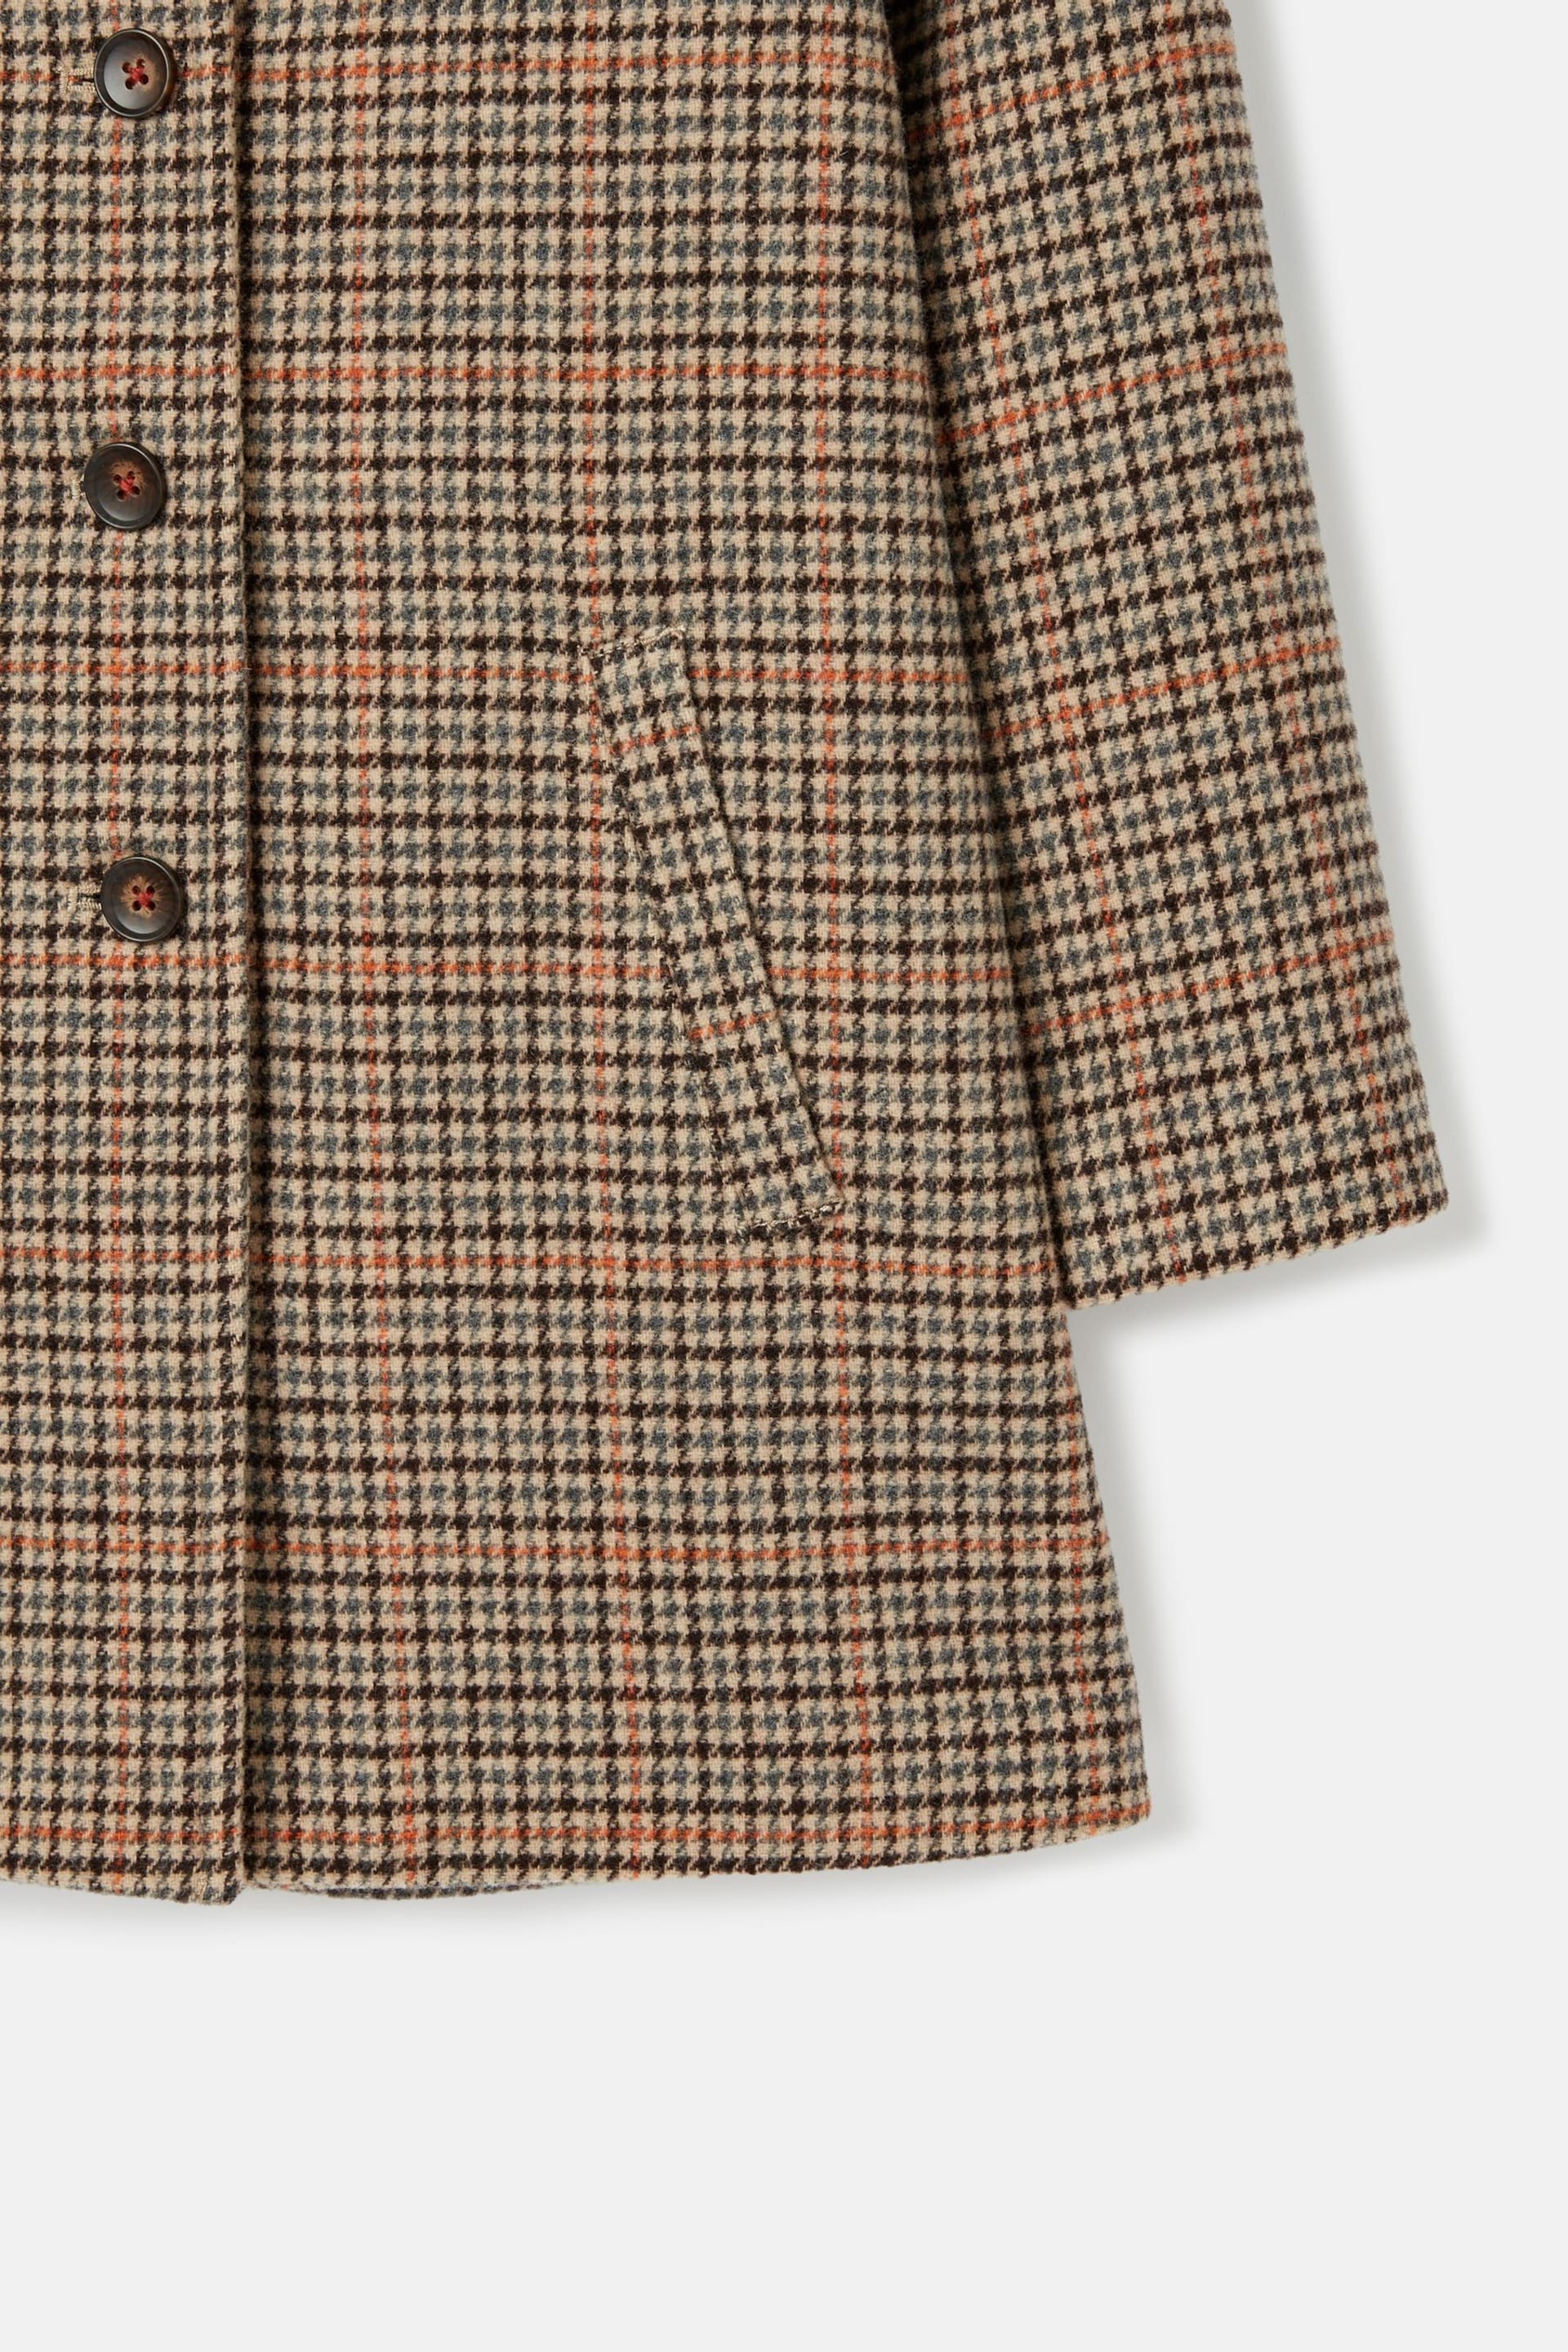 Joules Harrow Brown Wool Coat - Image 6 of 7